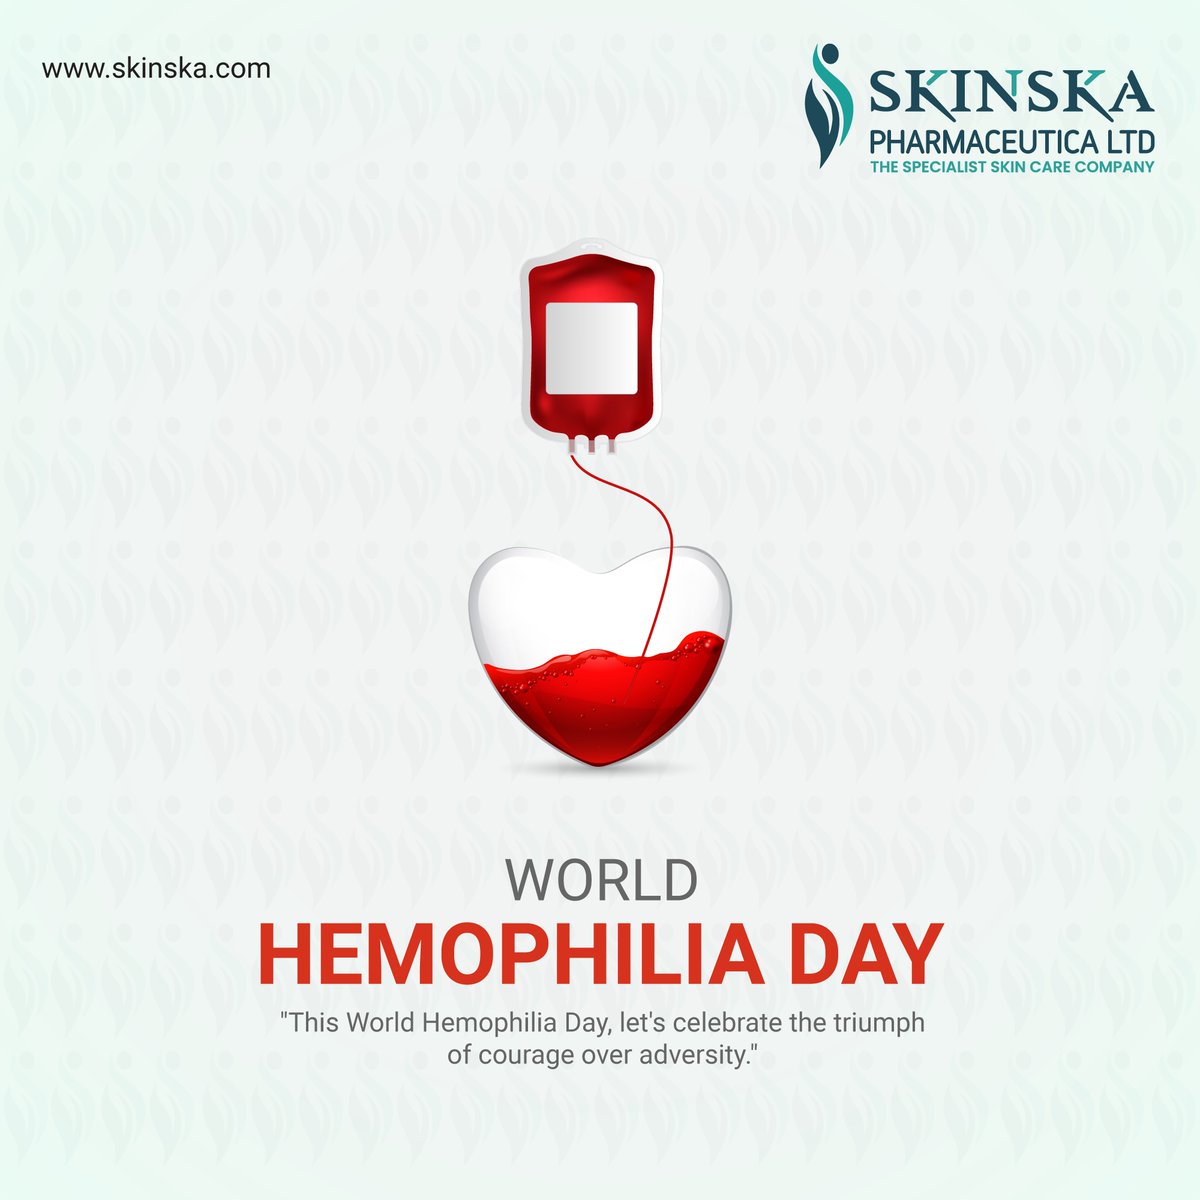 WORLD HEMOPHILIA DAY!

#hemophilia #bleedingdisorders #haemophilia #hemofilia #hemophiliac #hemophilialife #hemophiliaawareness #vwd #vonwillebrands #vonwillebranddisease #hemophiliaa #skinska #skincare #bestlotion #bestcream #sunscreen